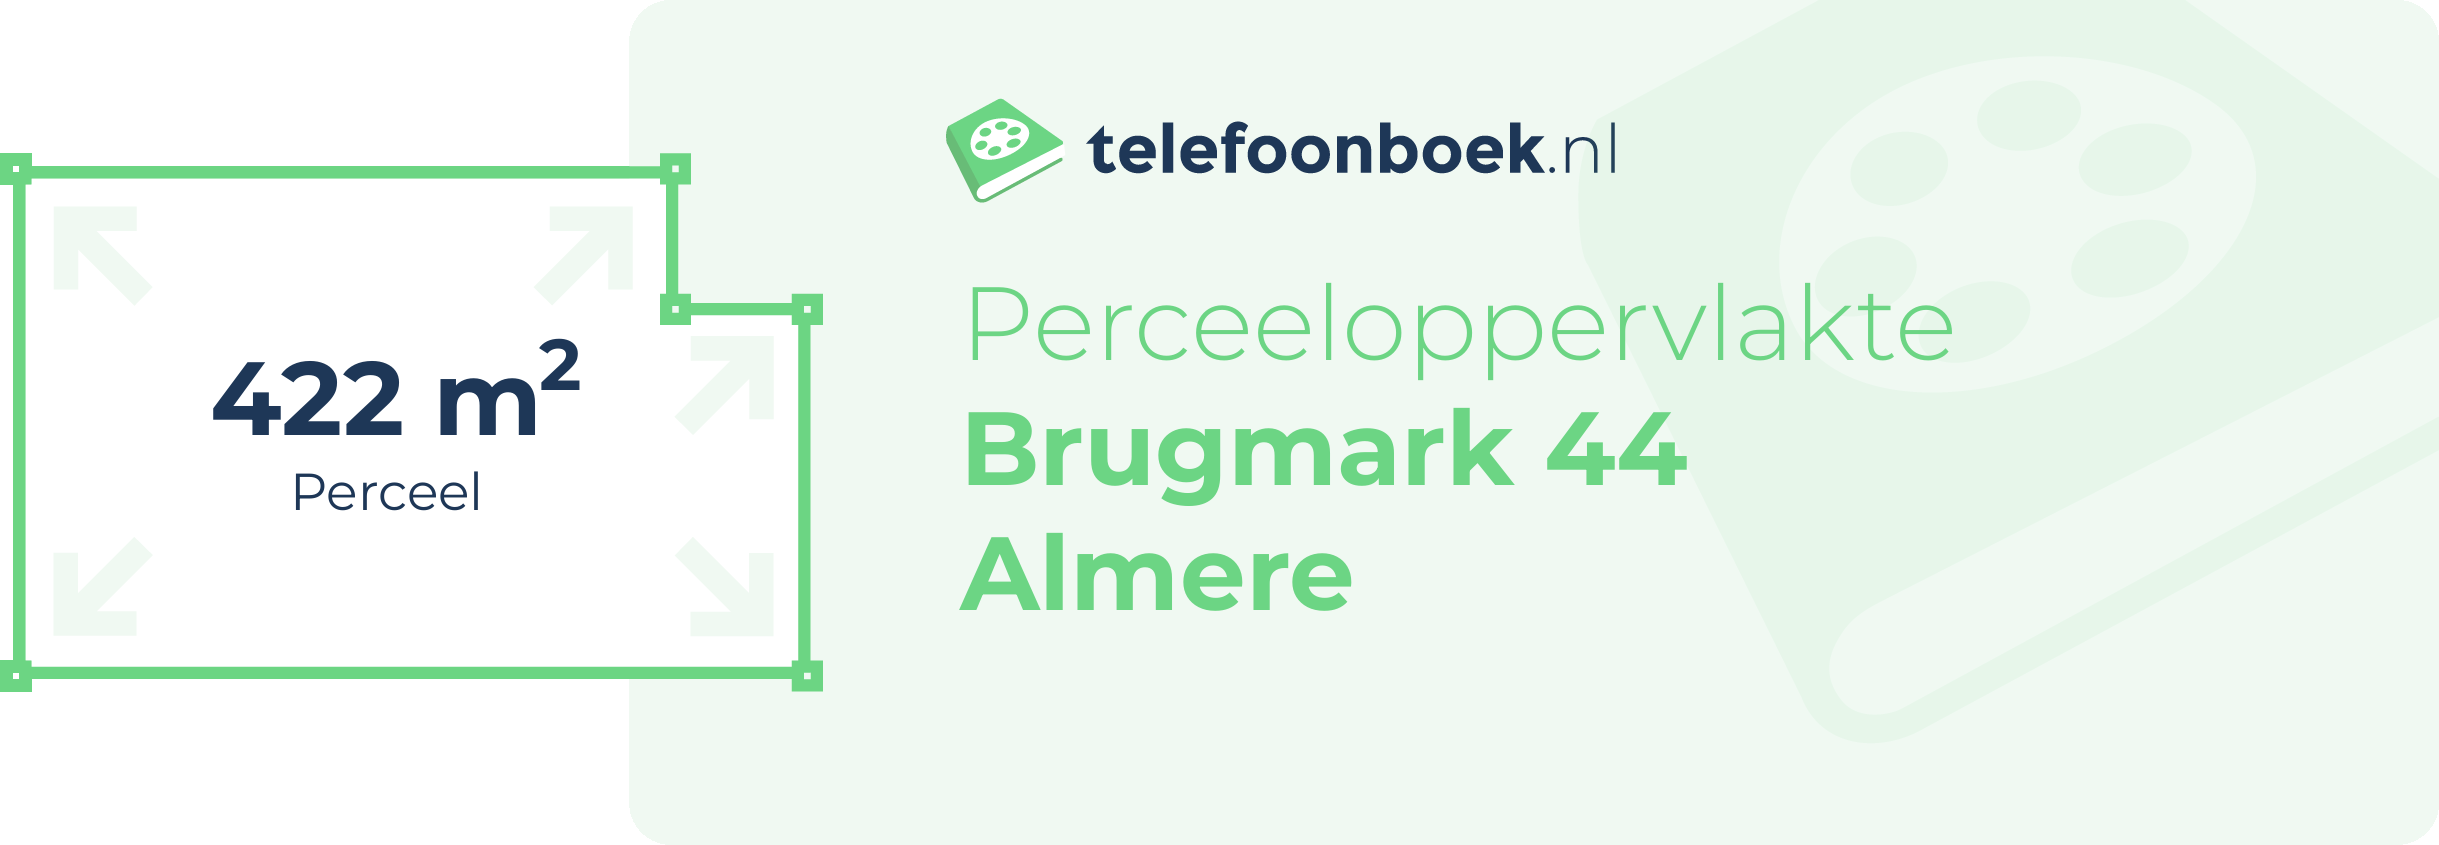 Perceeloppervlakte Brugmark 44 Almere